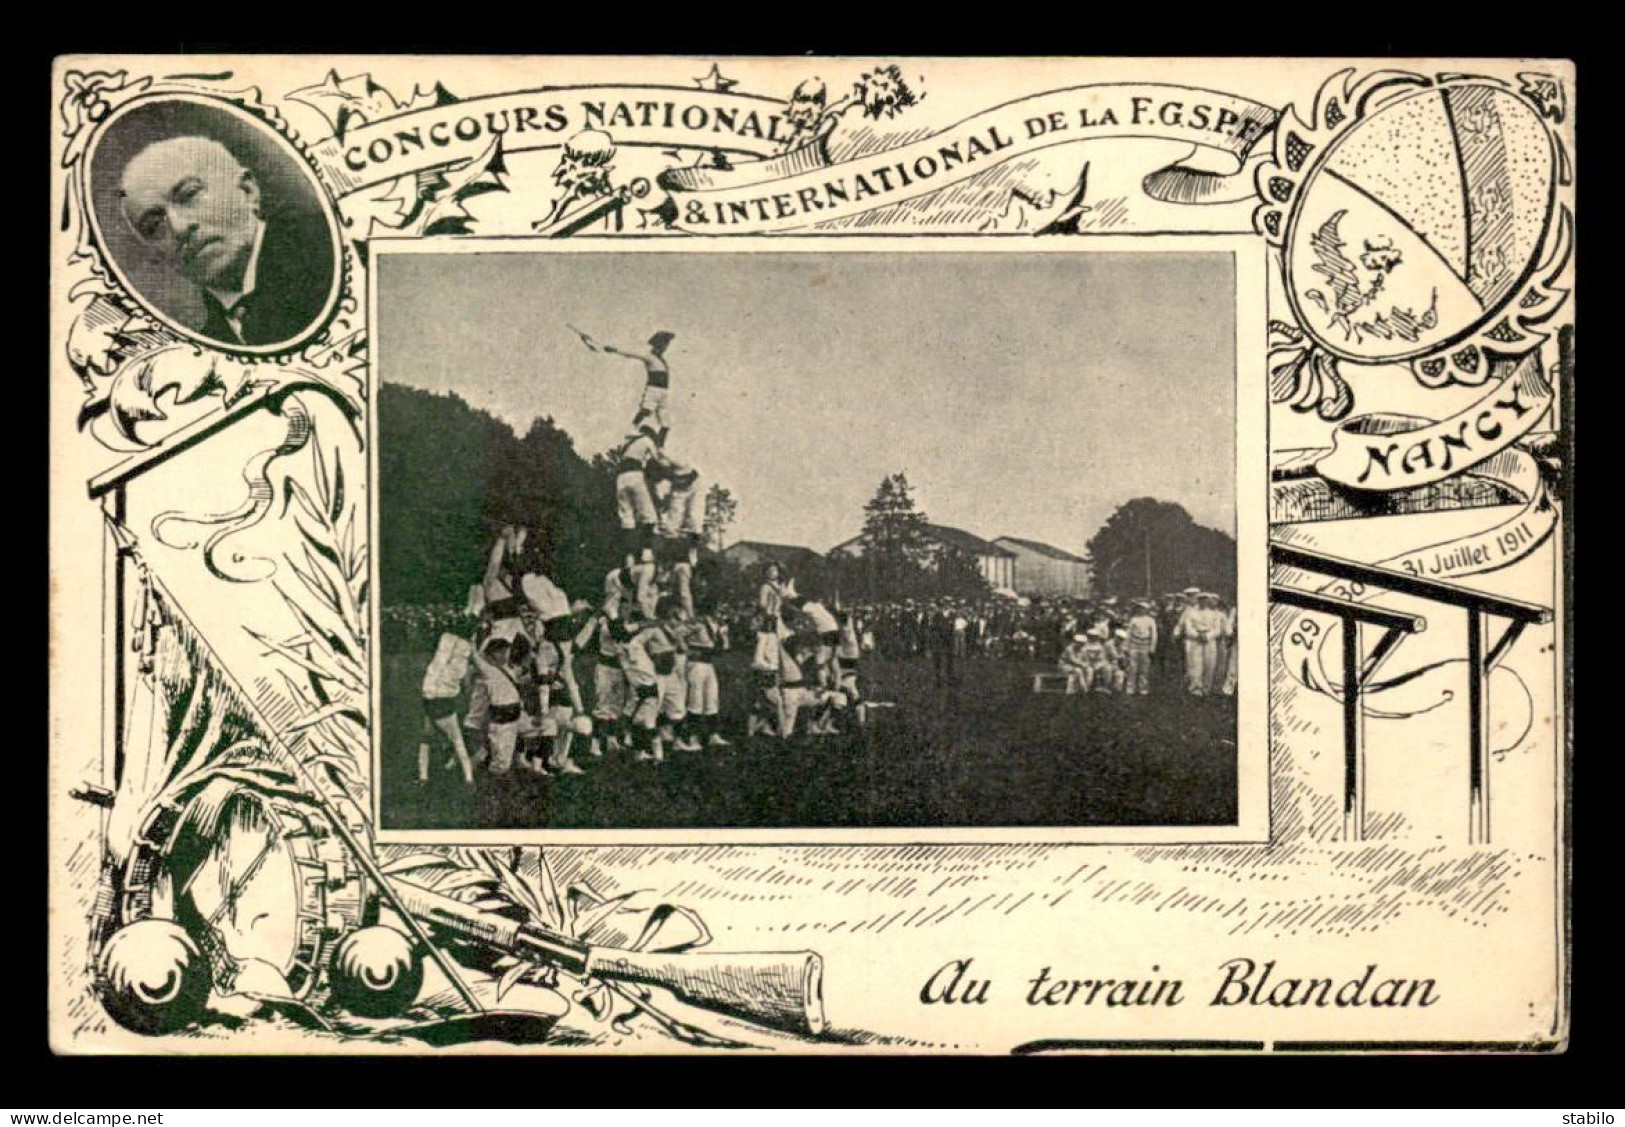 54 - NANCY - CONCOURS INTERNATIONAL DE LA F.G.S.P.E. 31 JUILLET 1911 - AU TERRAIN BLANDAN - Nancy